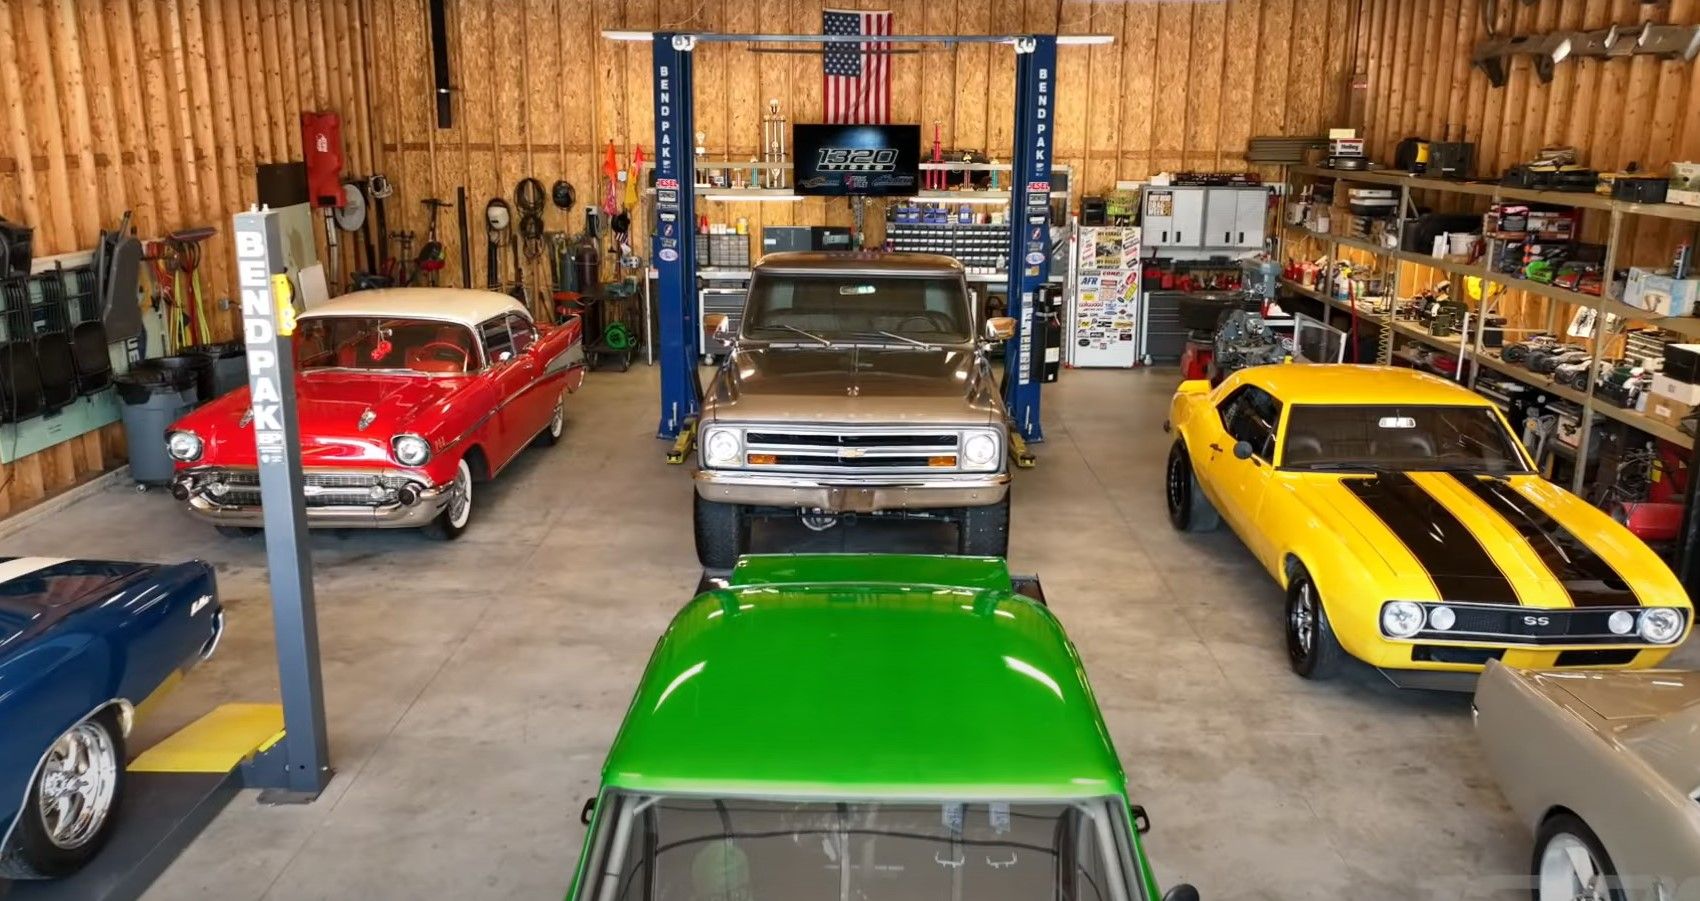 A Nebraska Car Enthusiast Rules A 1960s Classic Car Empire On A 35-Acre Spread